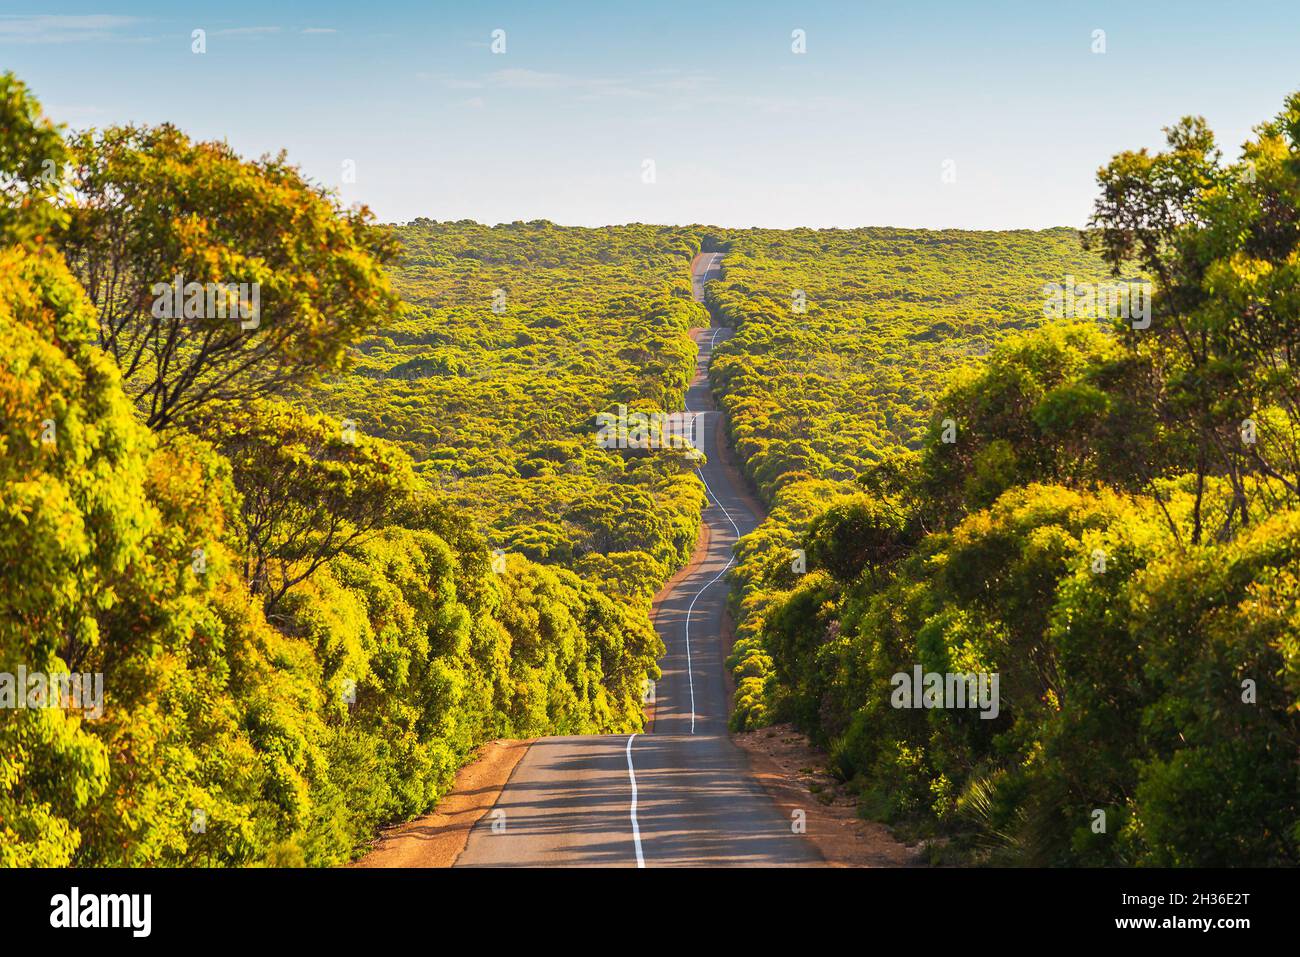 Longue route sinueuse sur Kangaroo Island à travers le Bush et les gumtrees, parc national de Flinders Chase, Australie méridionale Banque D'Images